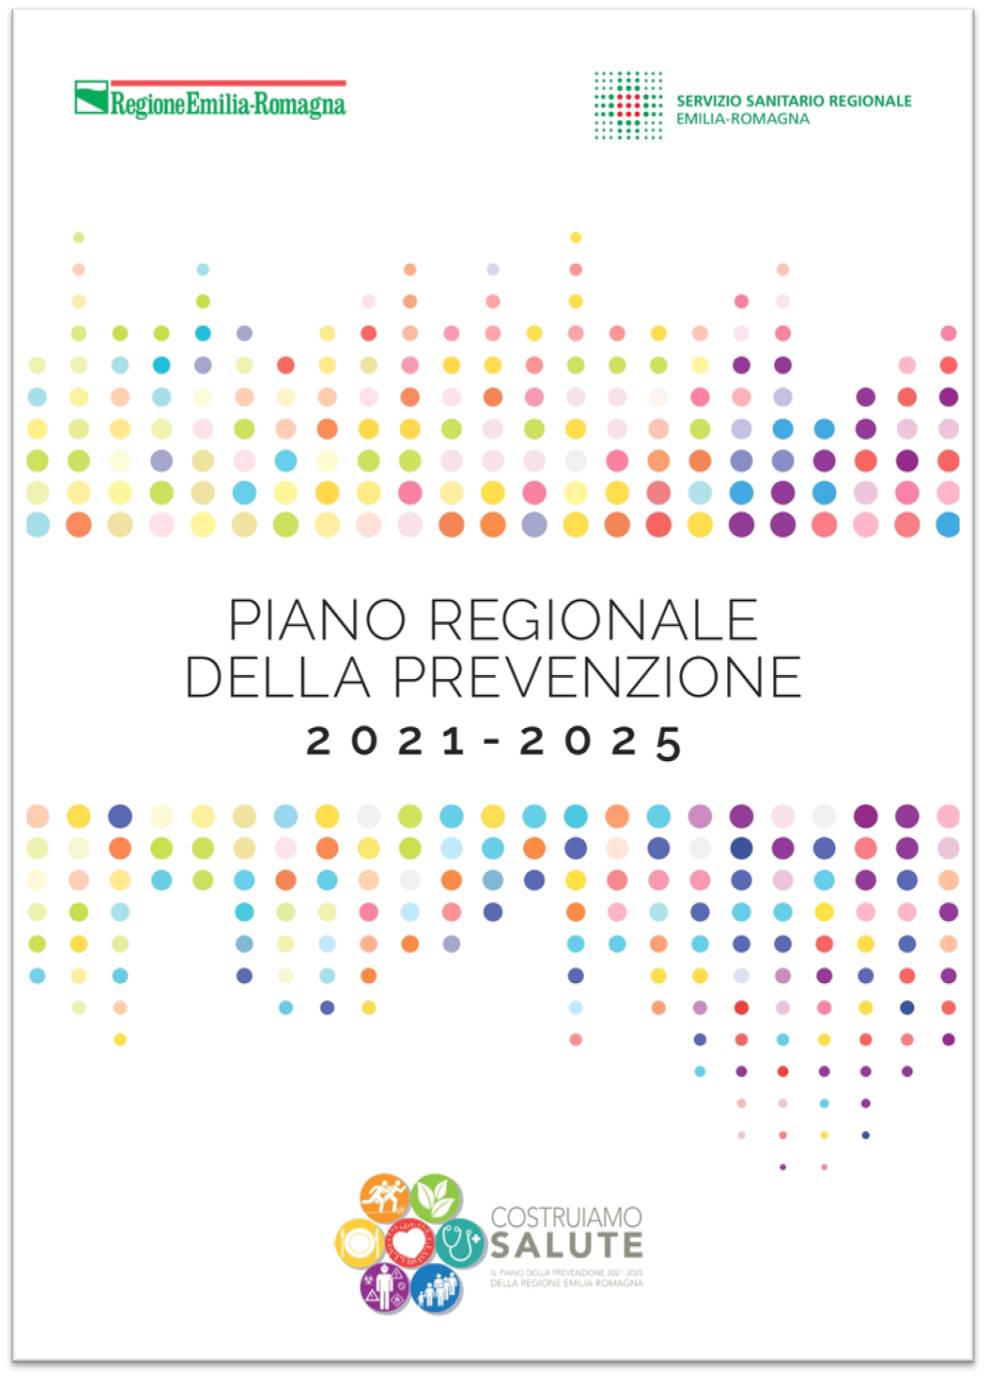 PIANO REGIONALE DELLA PREVENZIONE 2021-2025